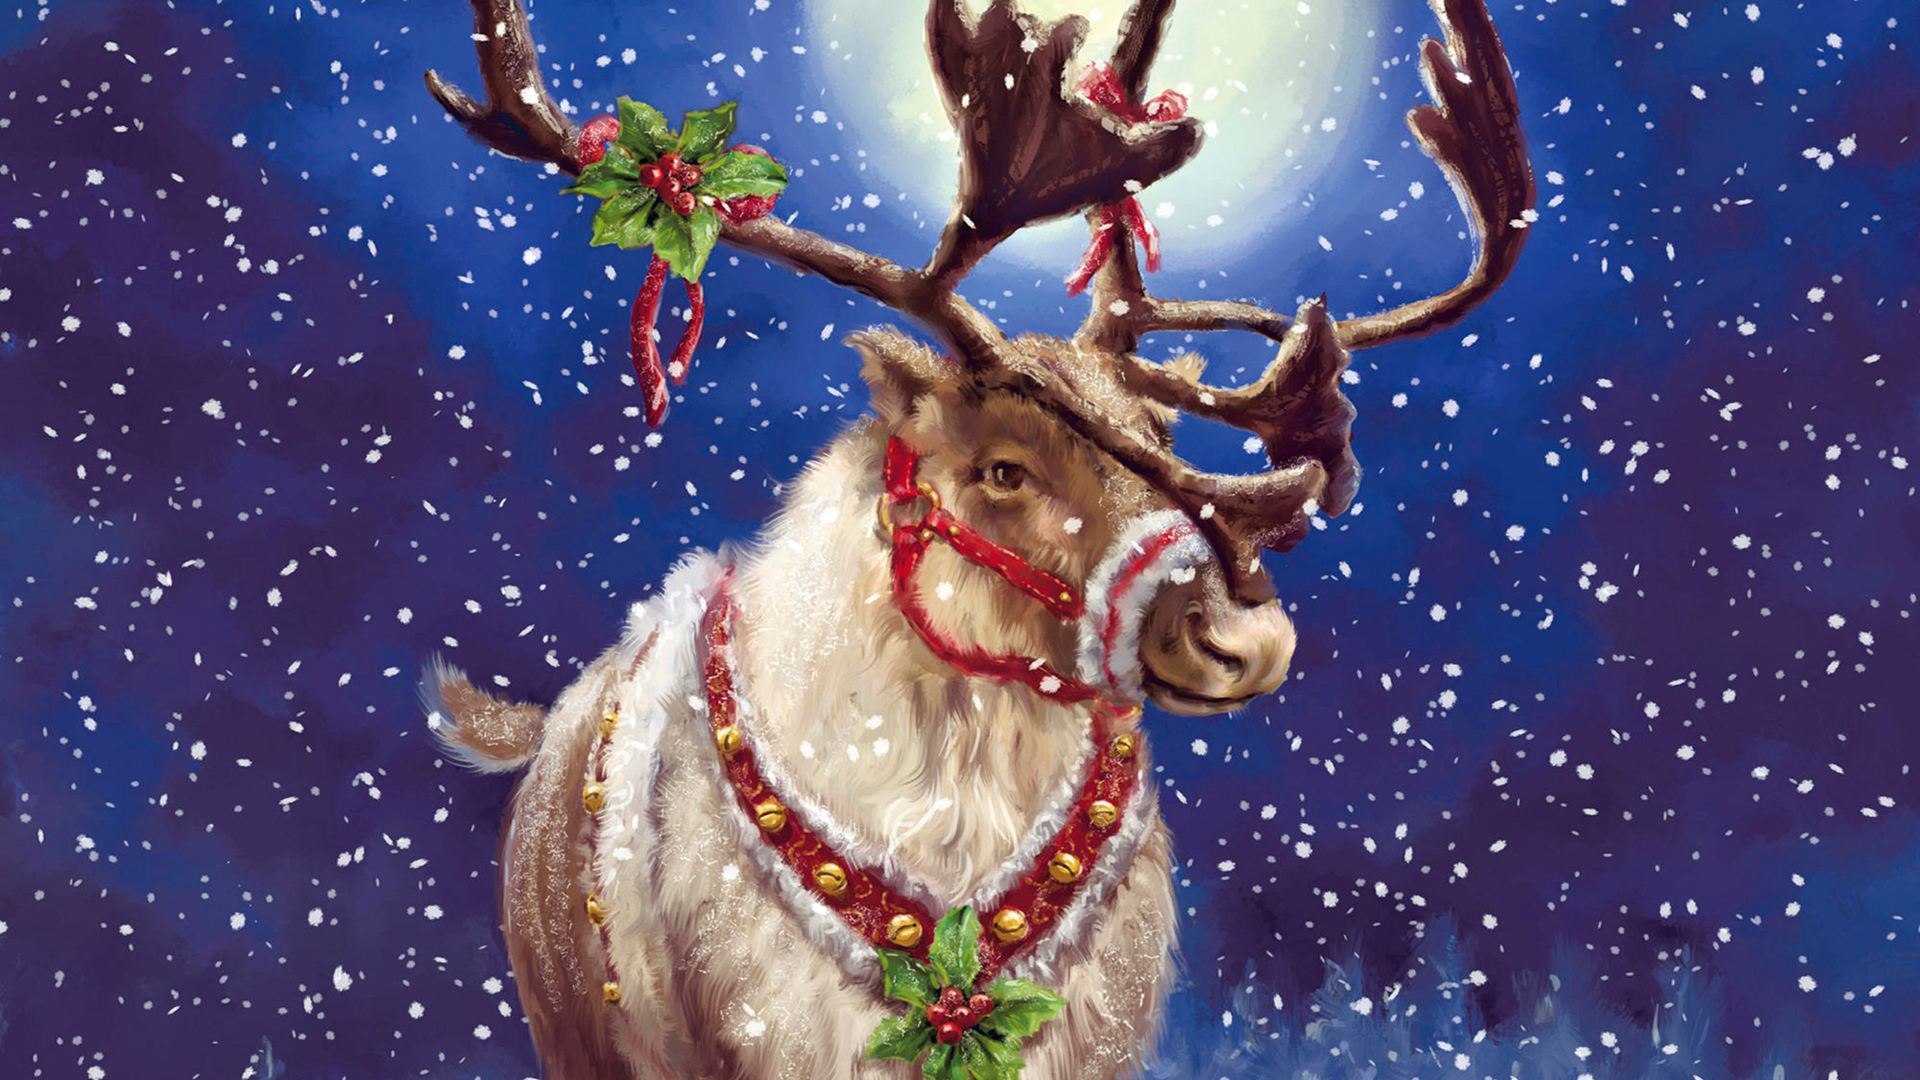 Скачать обои бесплатно Животные, Снег, Праздники, Олени, Рождество (Christmas Xmas), Рисунки картинка на рабочий стол ПК